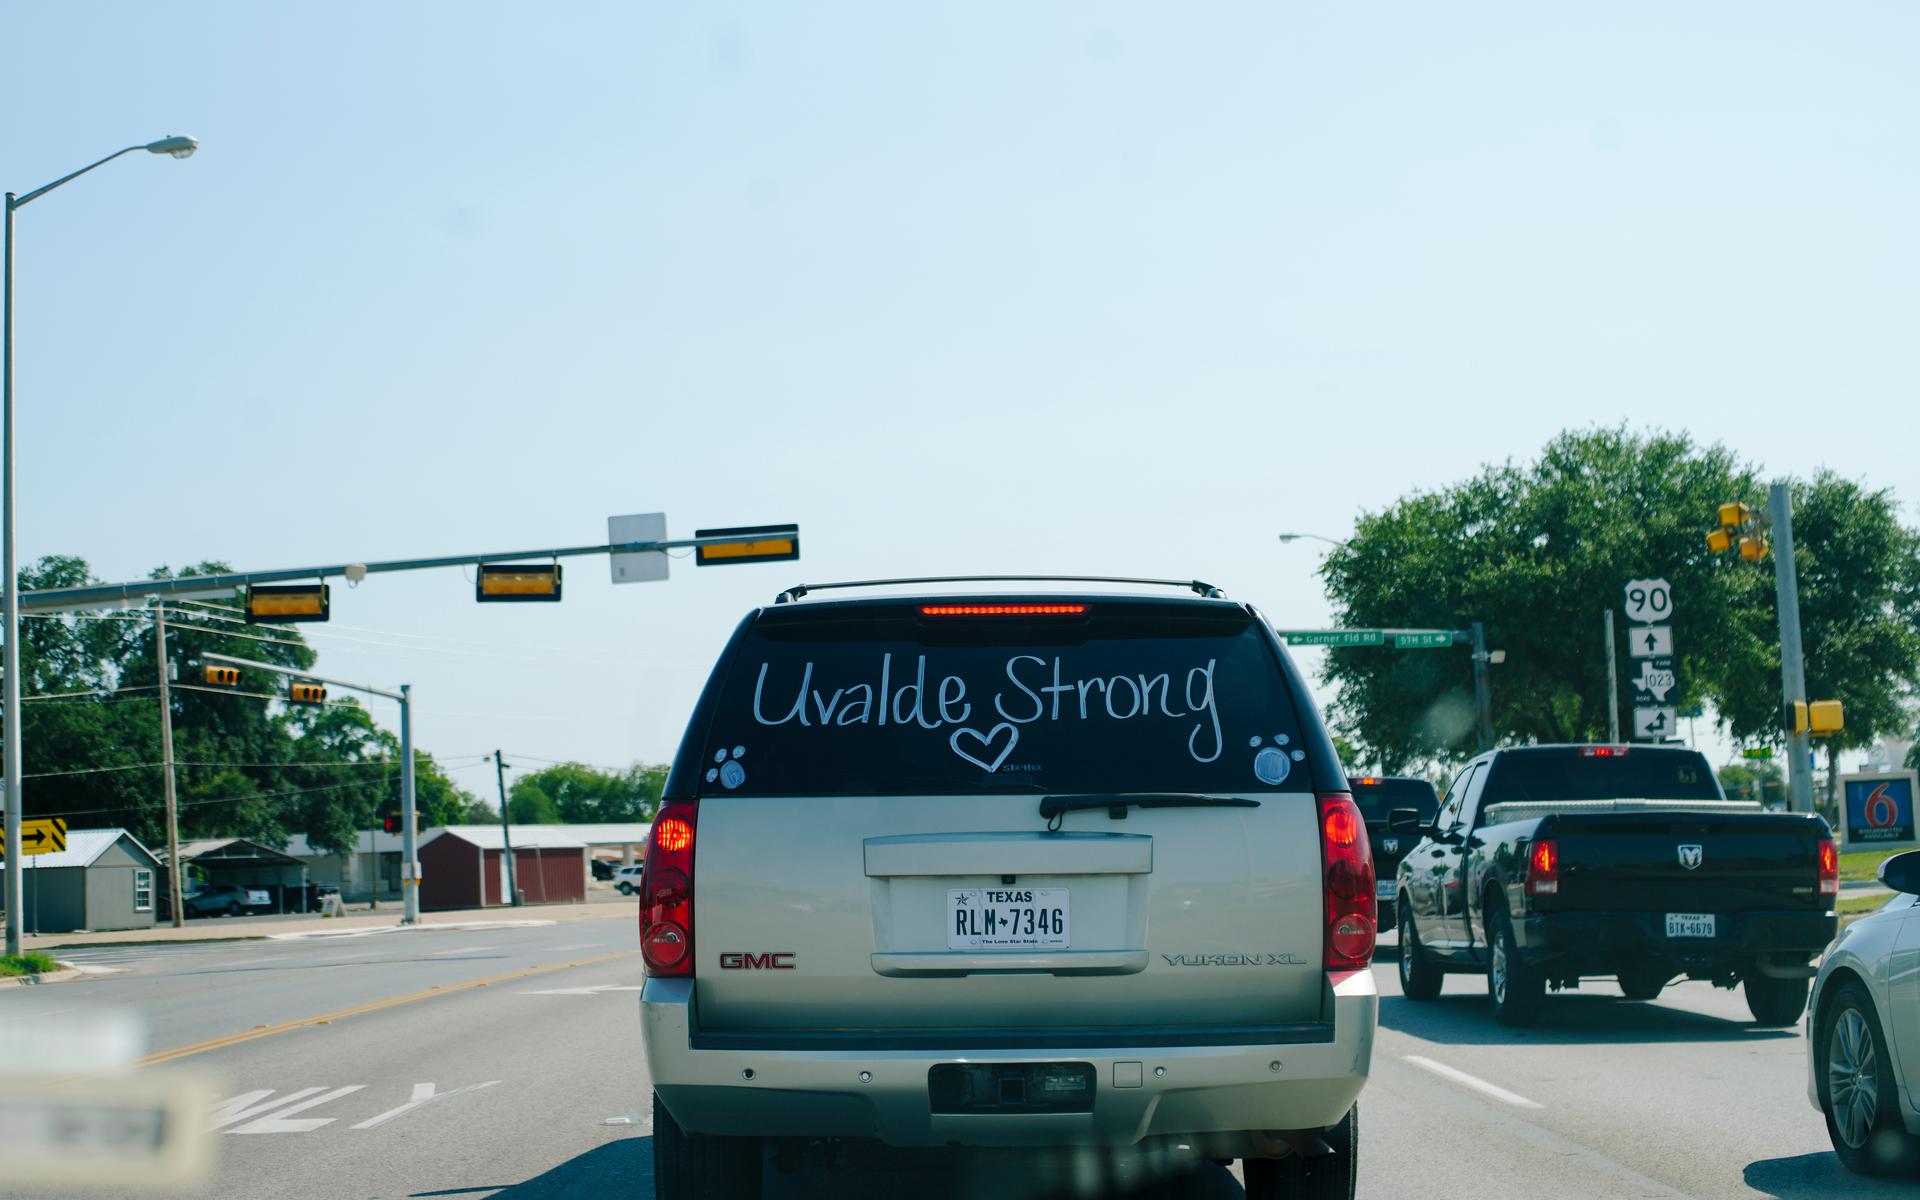 En bil med budskapet “Uvalde Strong” skrivet på bakrutan.